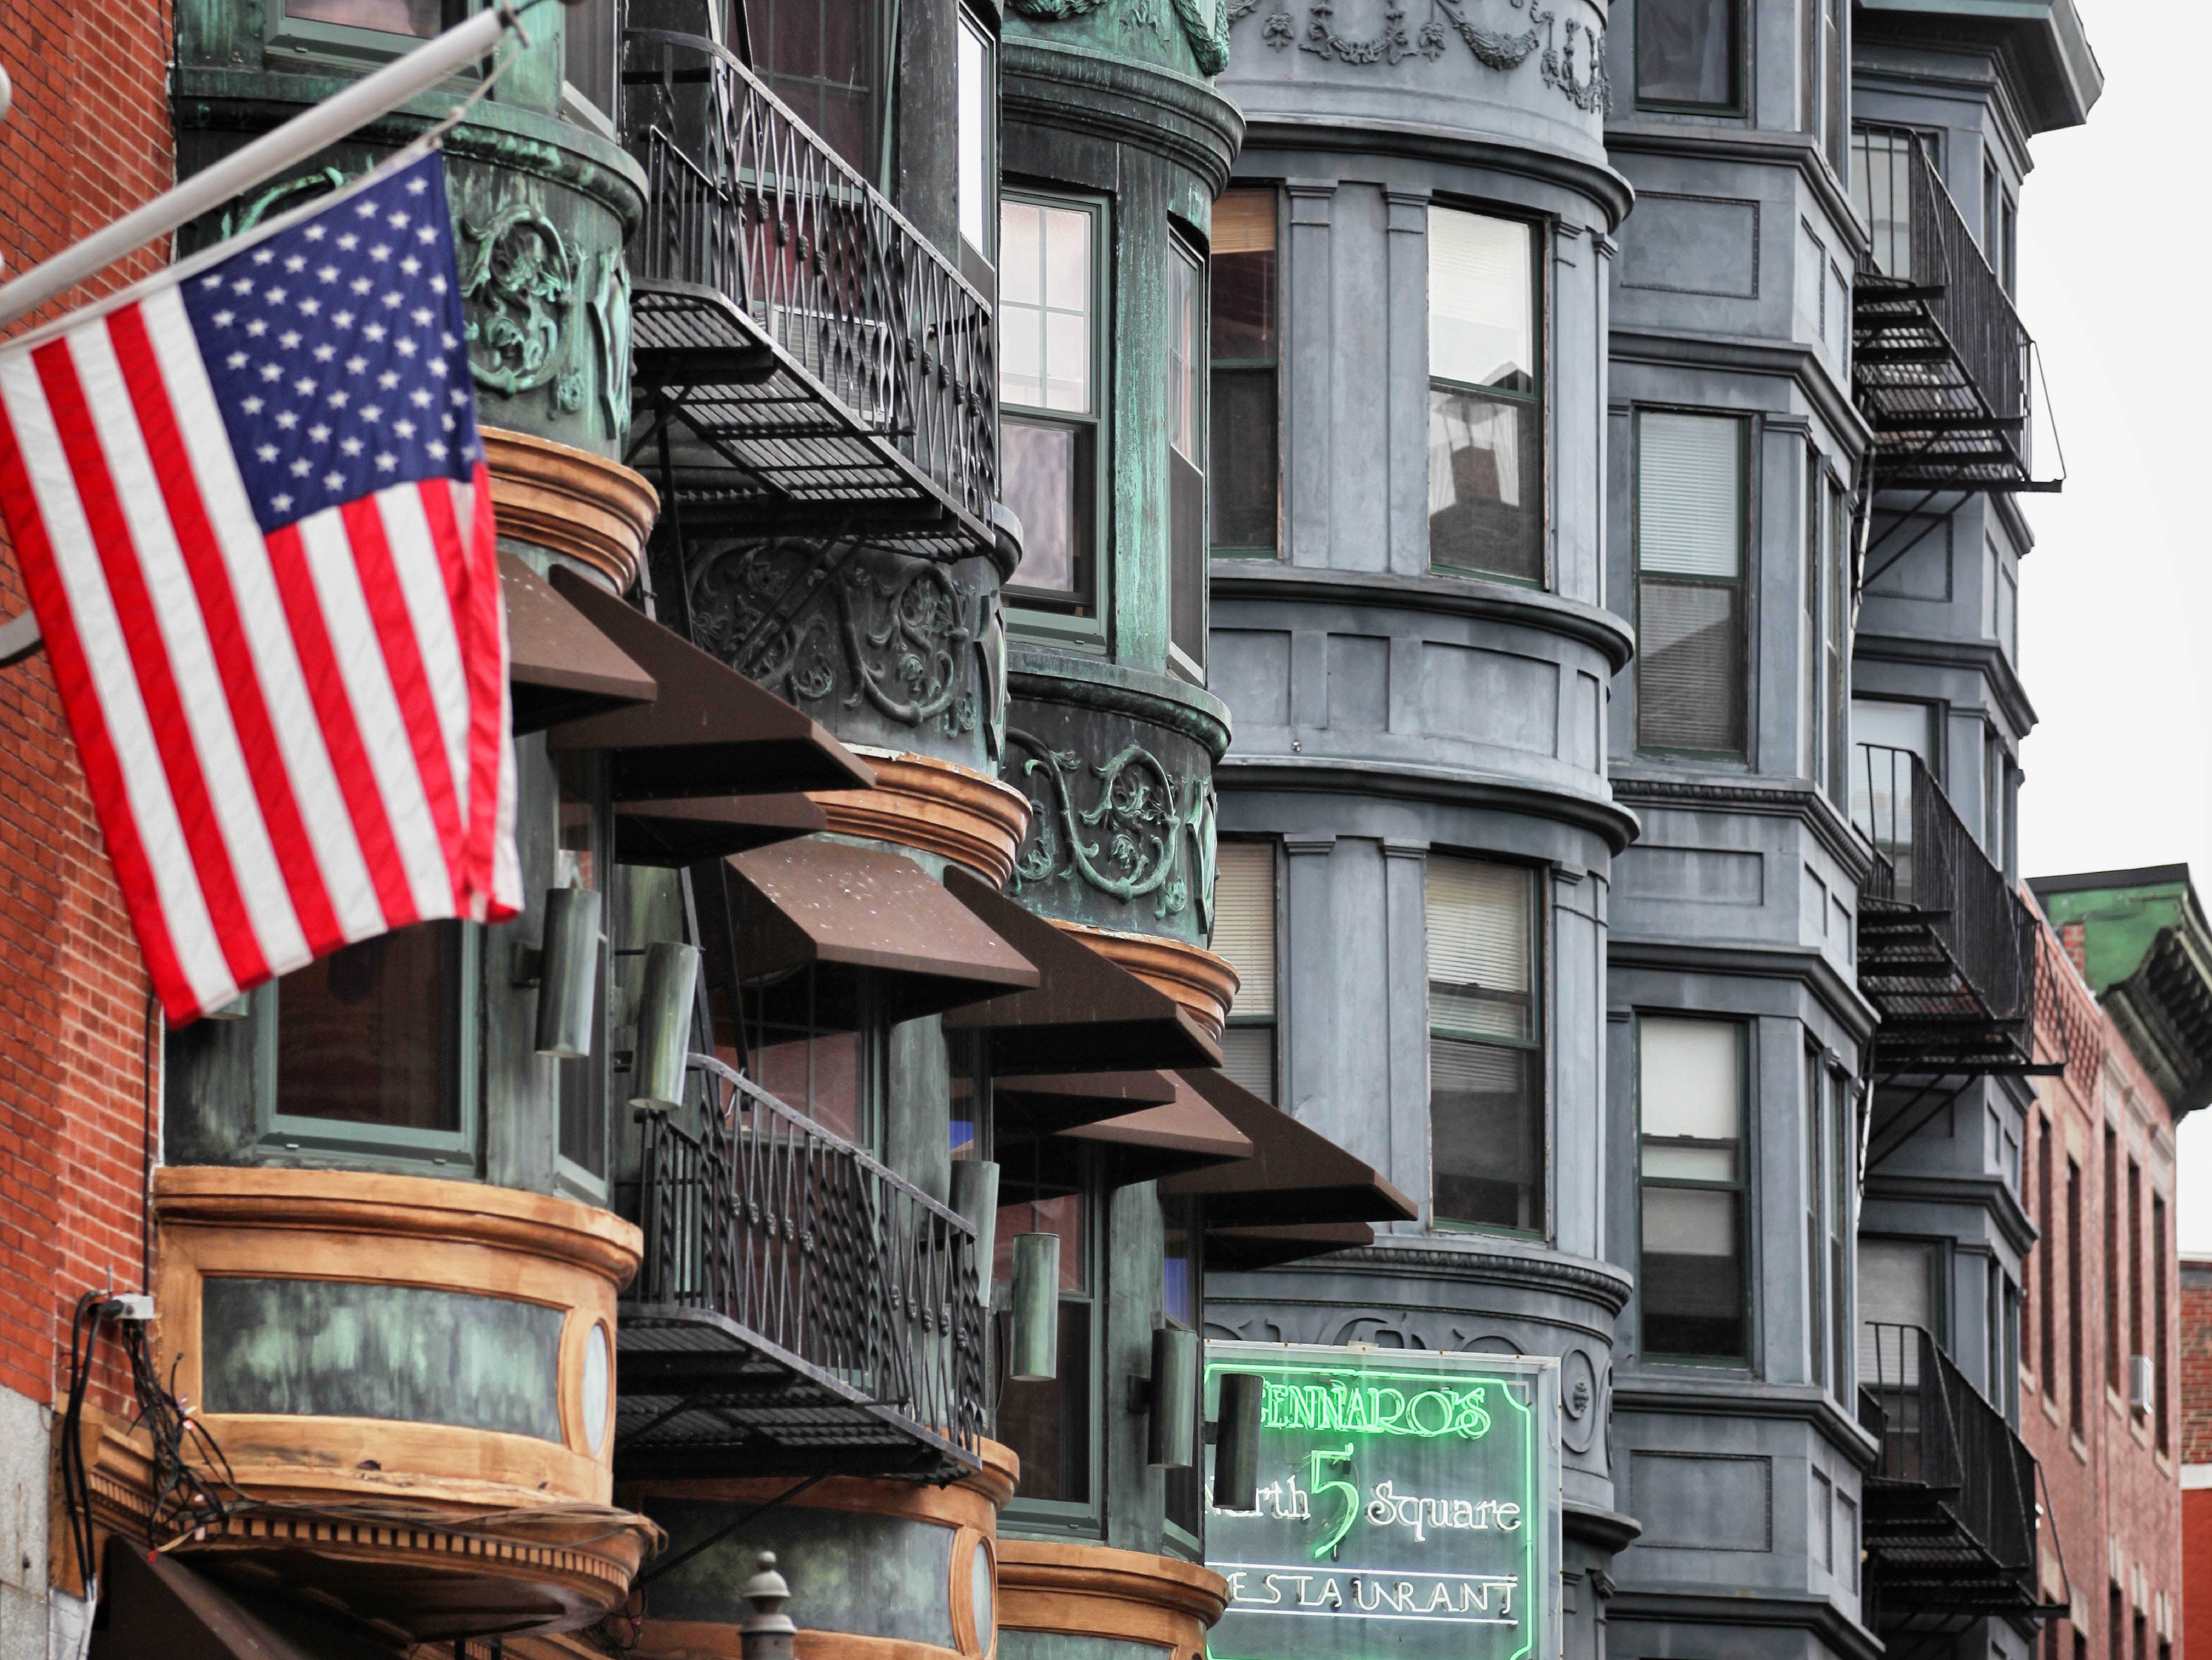 Amerikaanse vlag wappert aan de huizenrijen met balkonnen